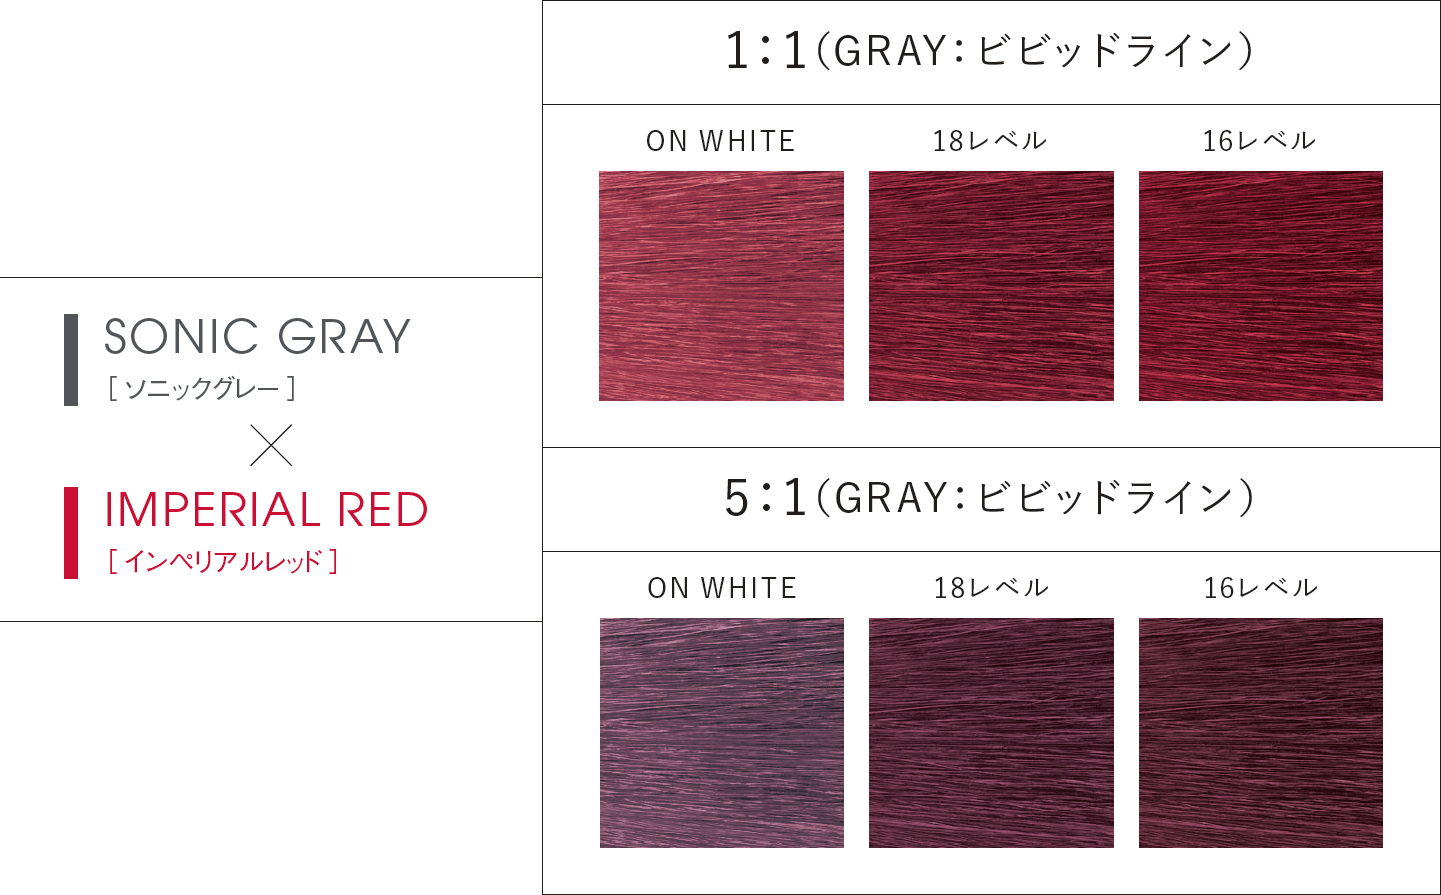 SONIC GRAY(ソニックグレー) × IMPERIAL RED(インペリアルレッド)